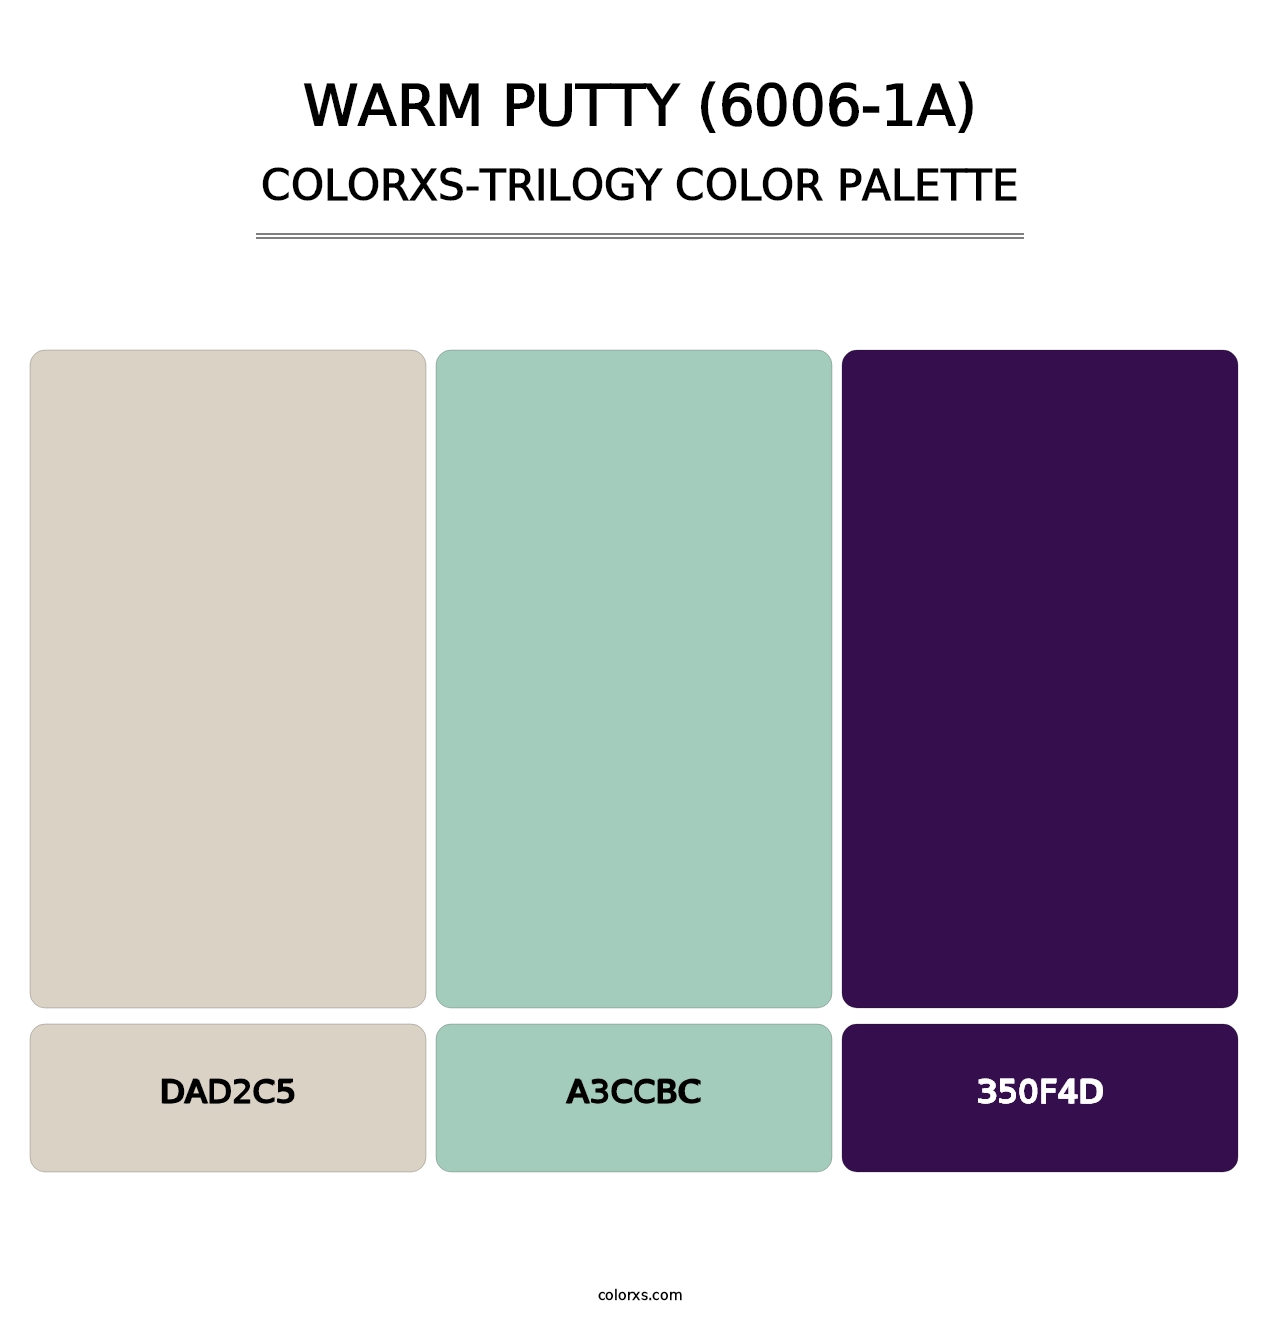 Warm Putty (6006-1A) - Colorxs Trilogy Palette